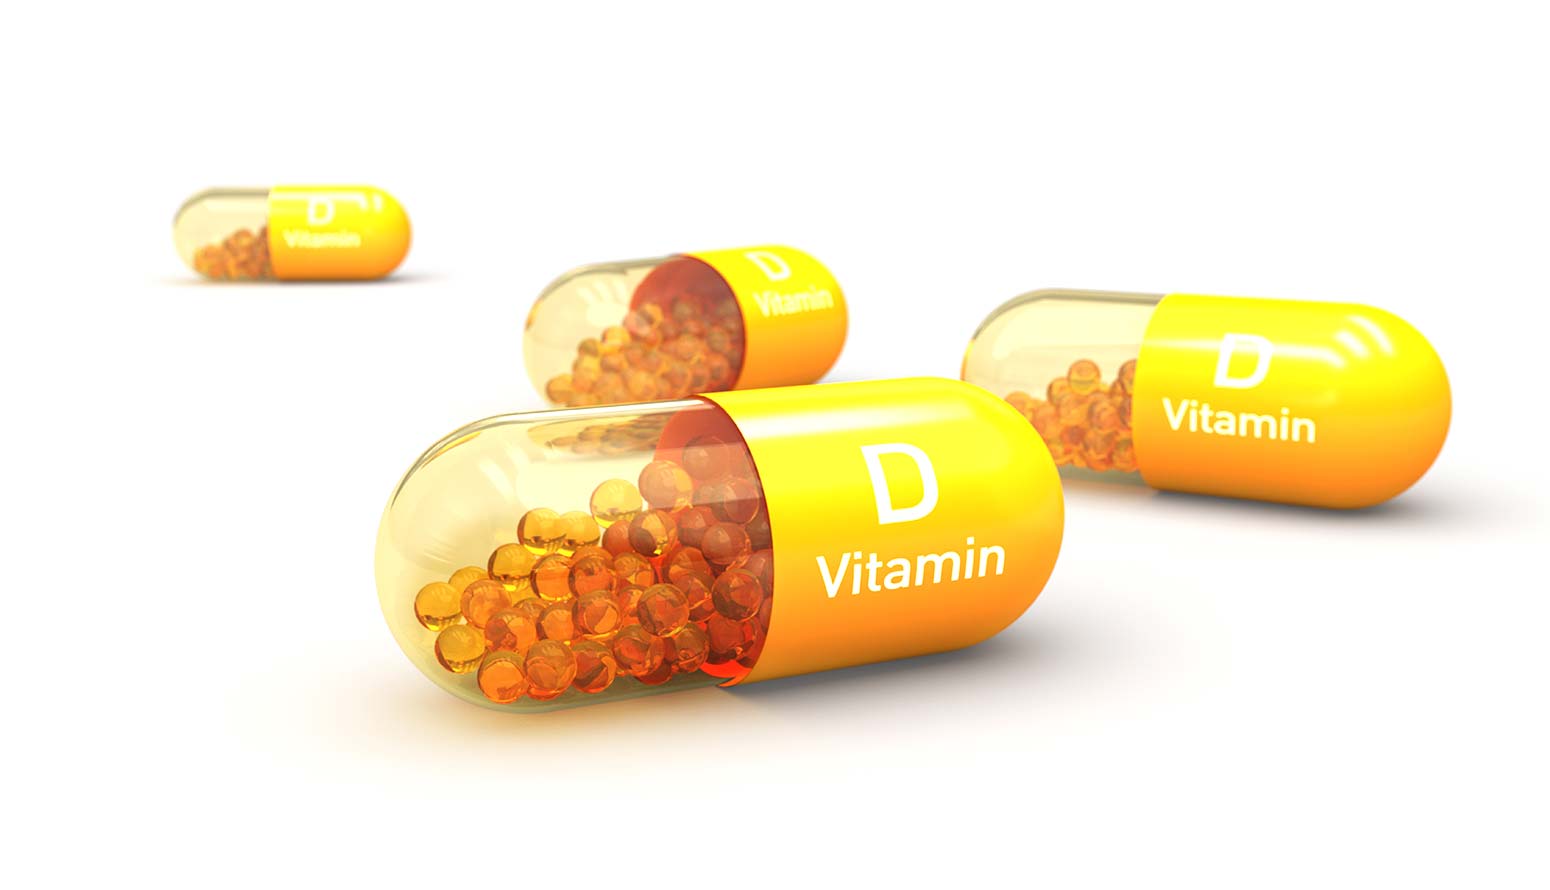 vitamin d capsule in yellow color